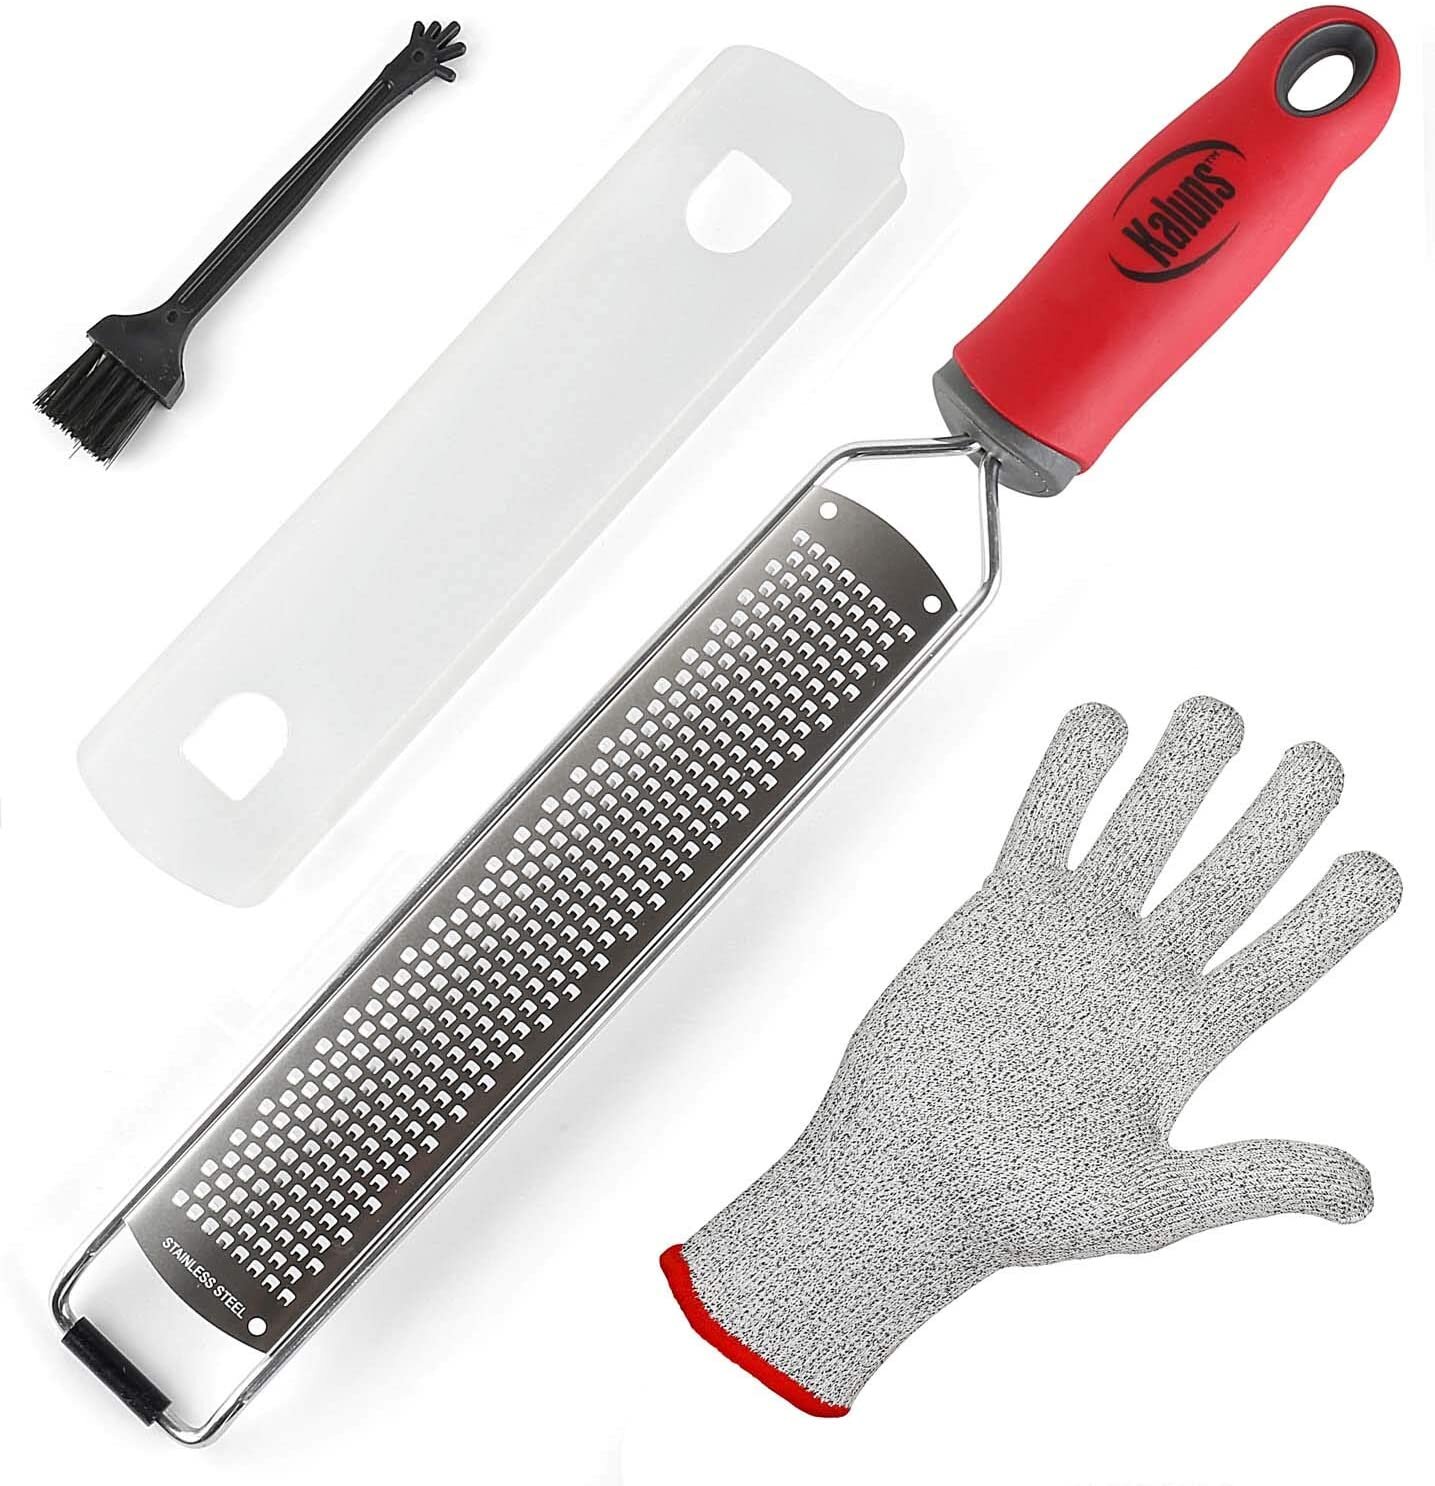 Bene Casa hand-held, 4-way grater, stainless-steel blade, comfort hand